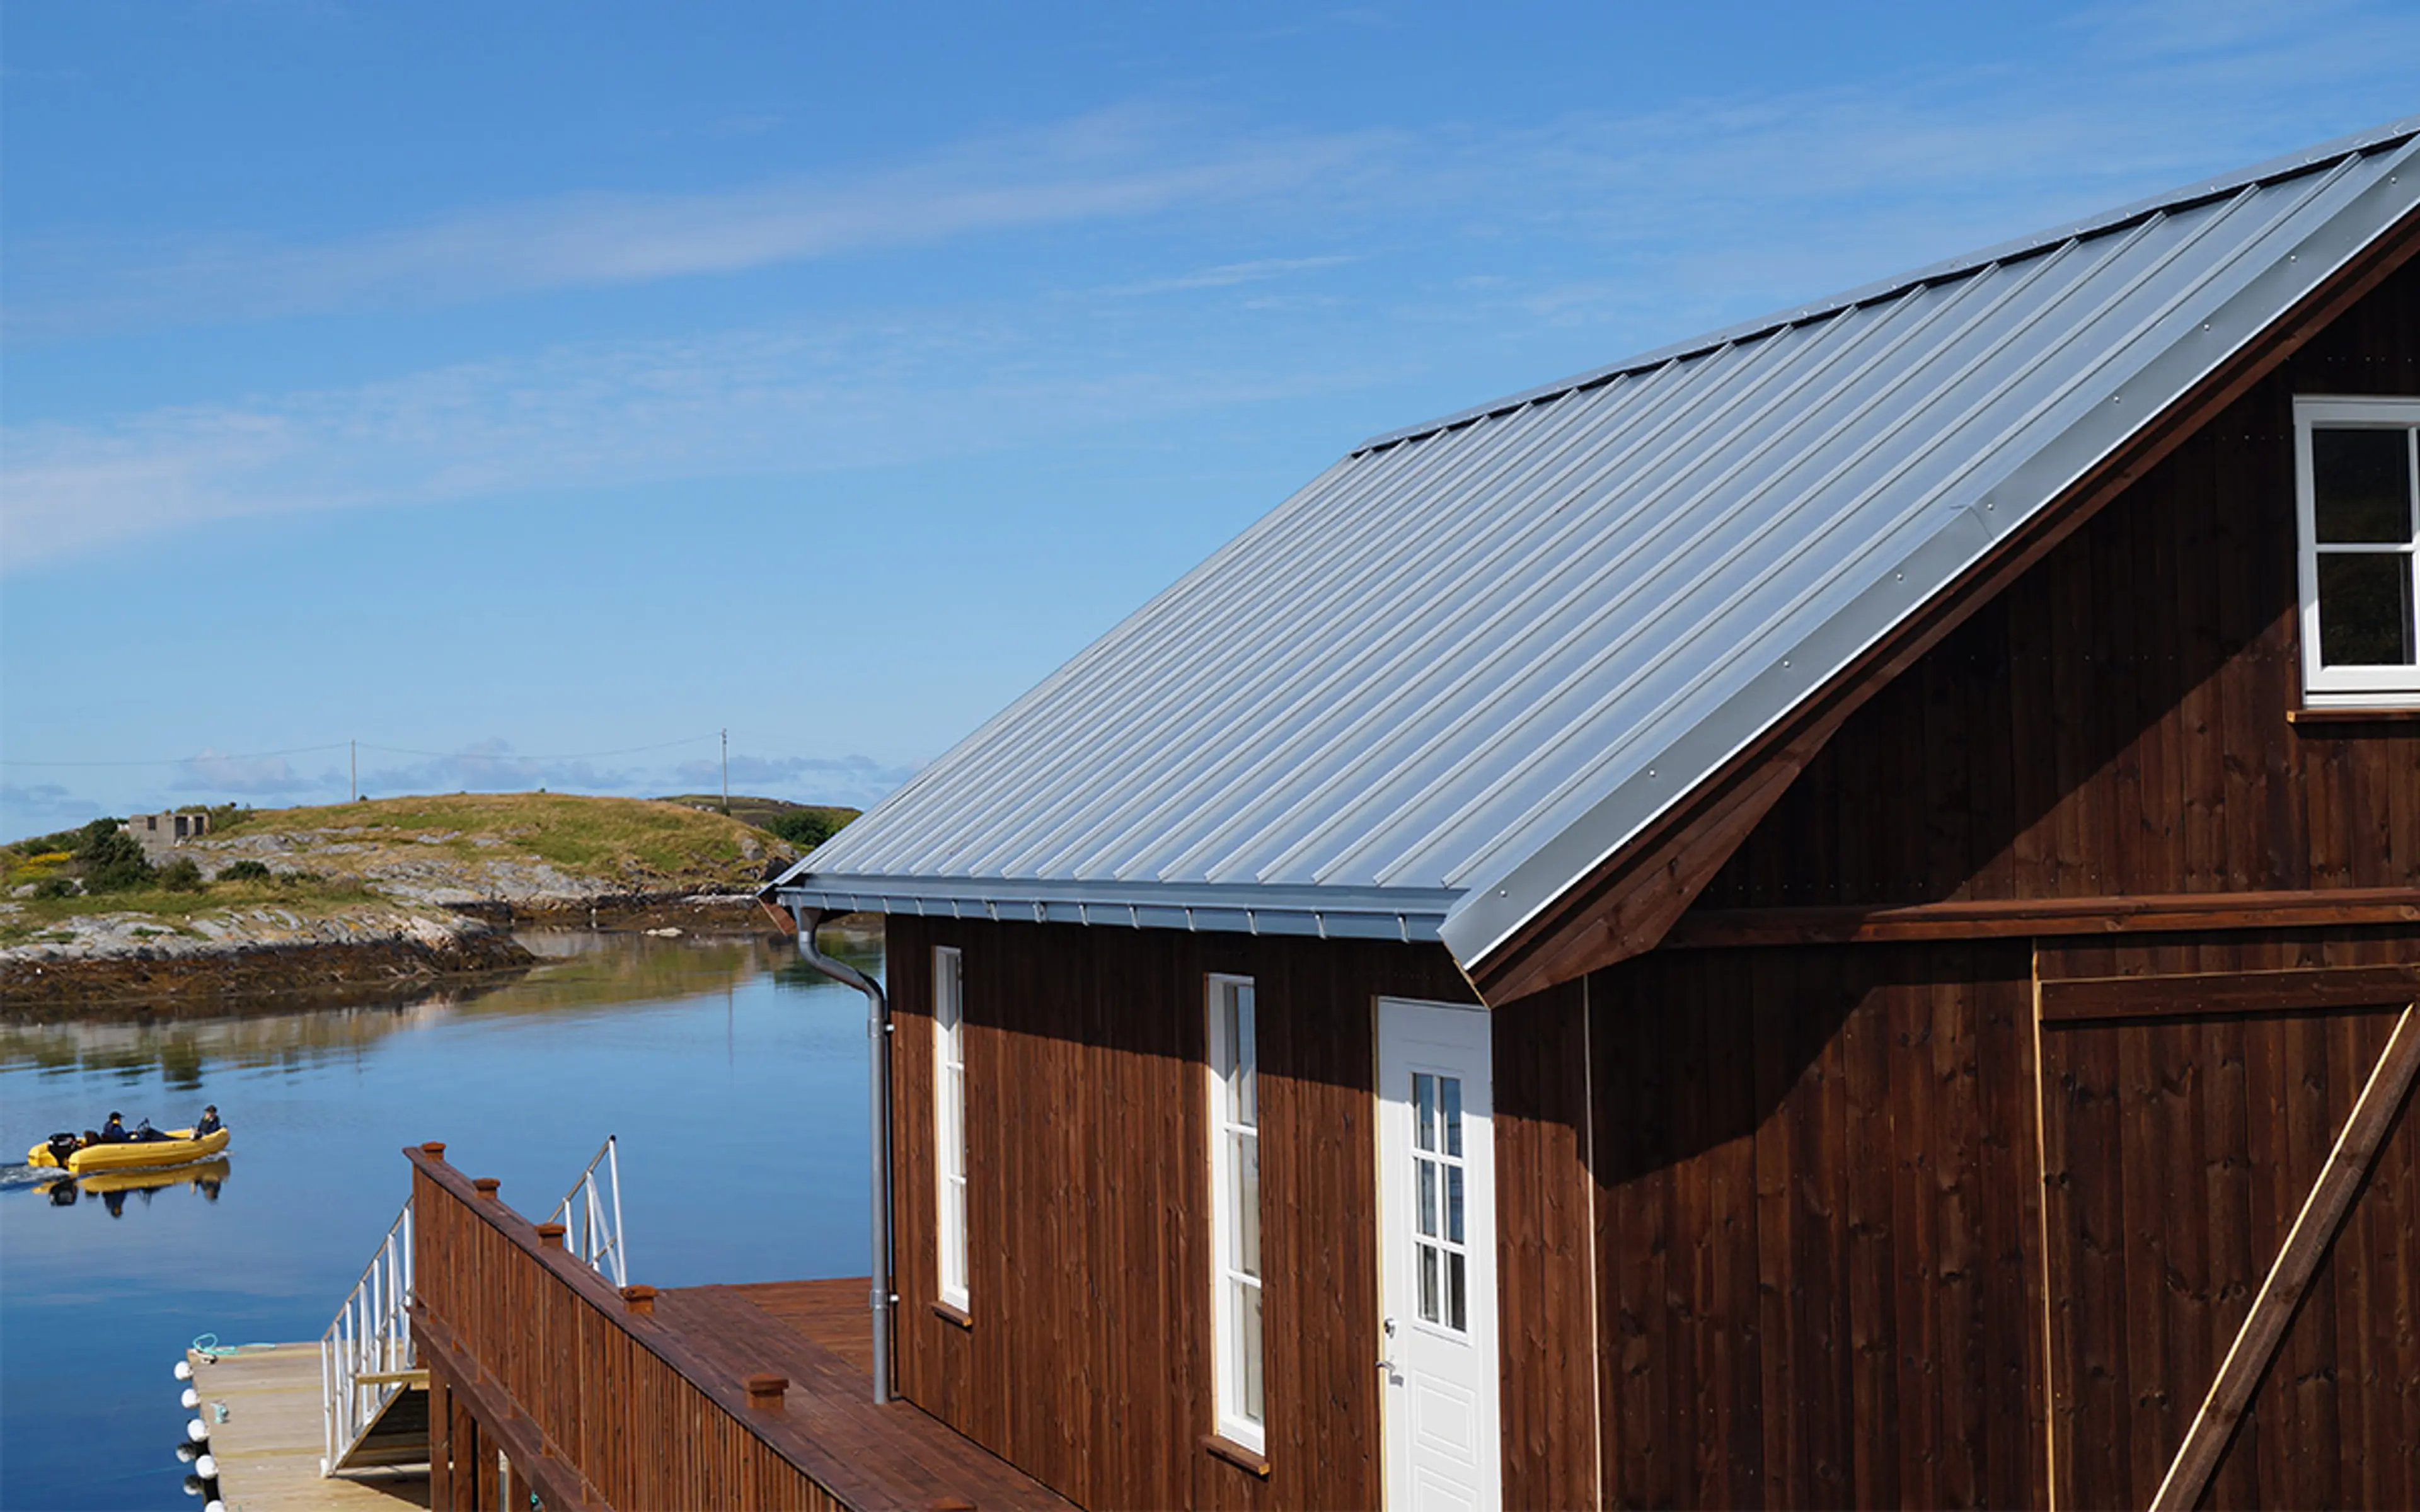 hytte ved sjøen med rektangulære takrenner og stålplater på taket